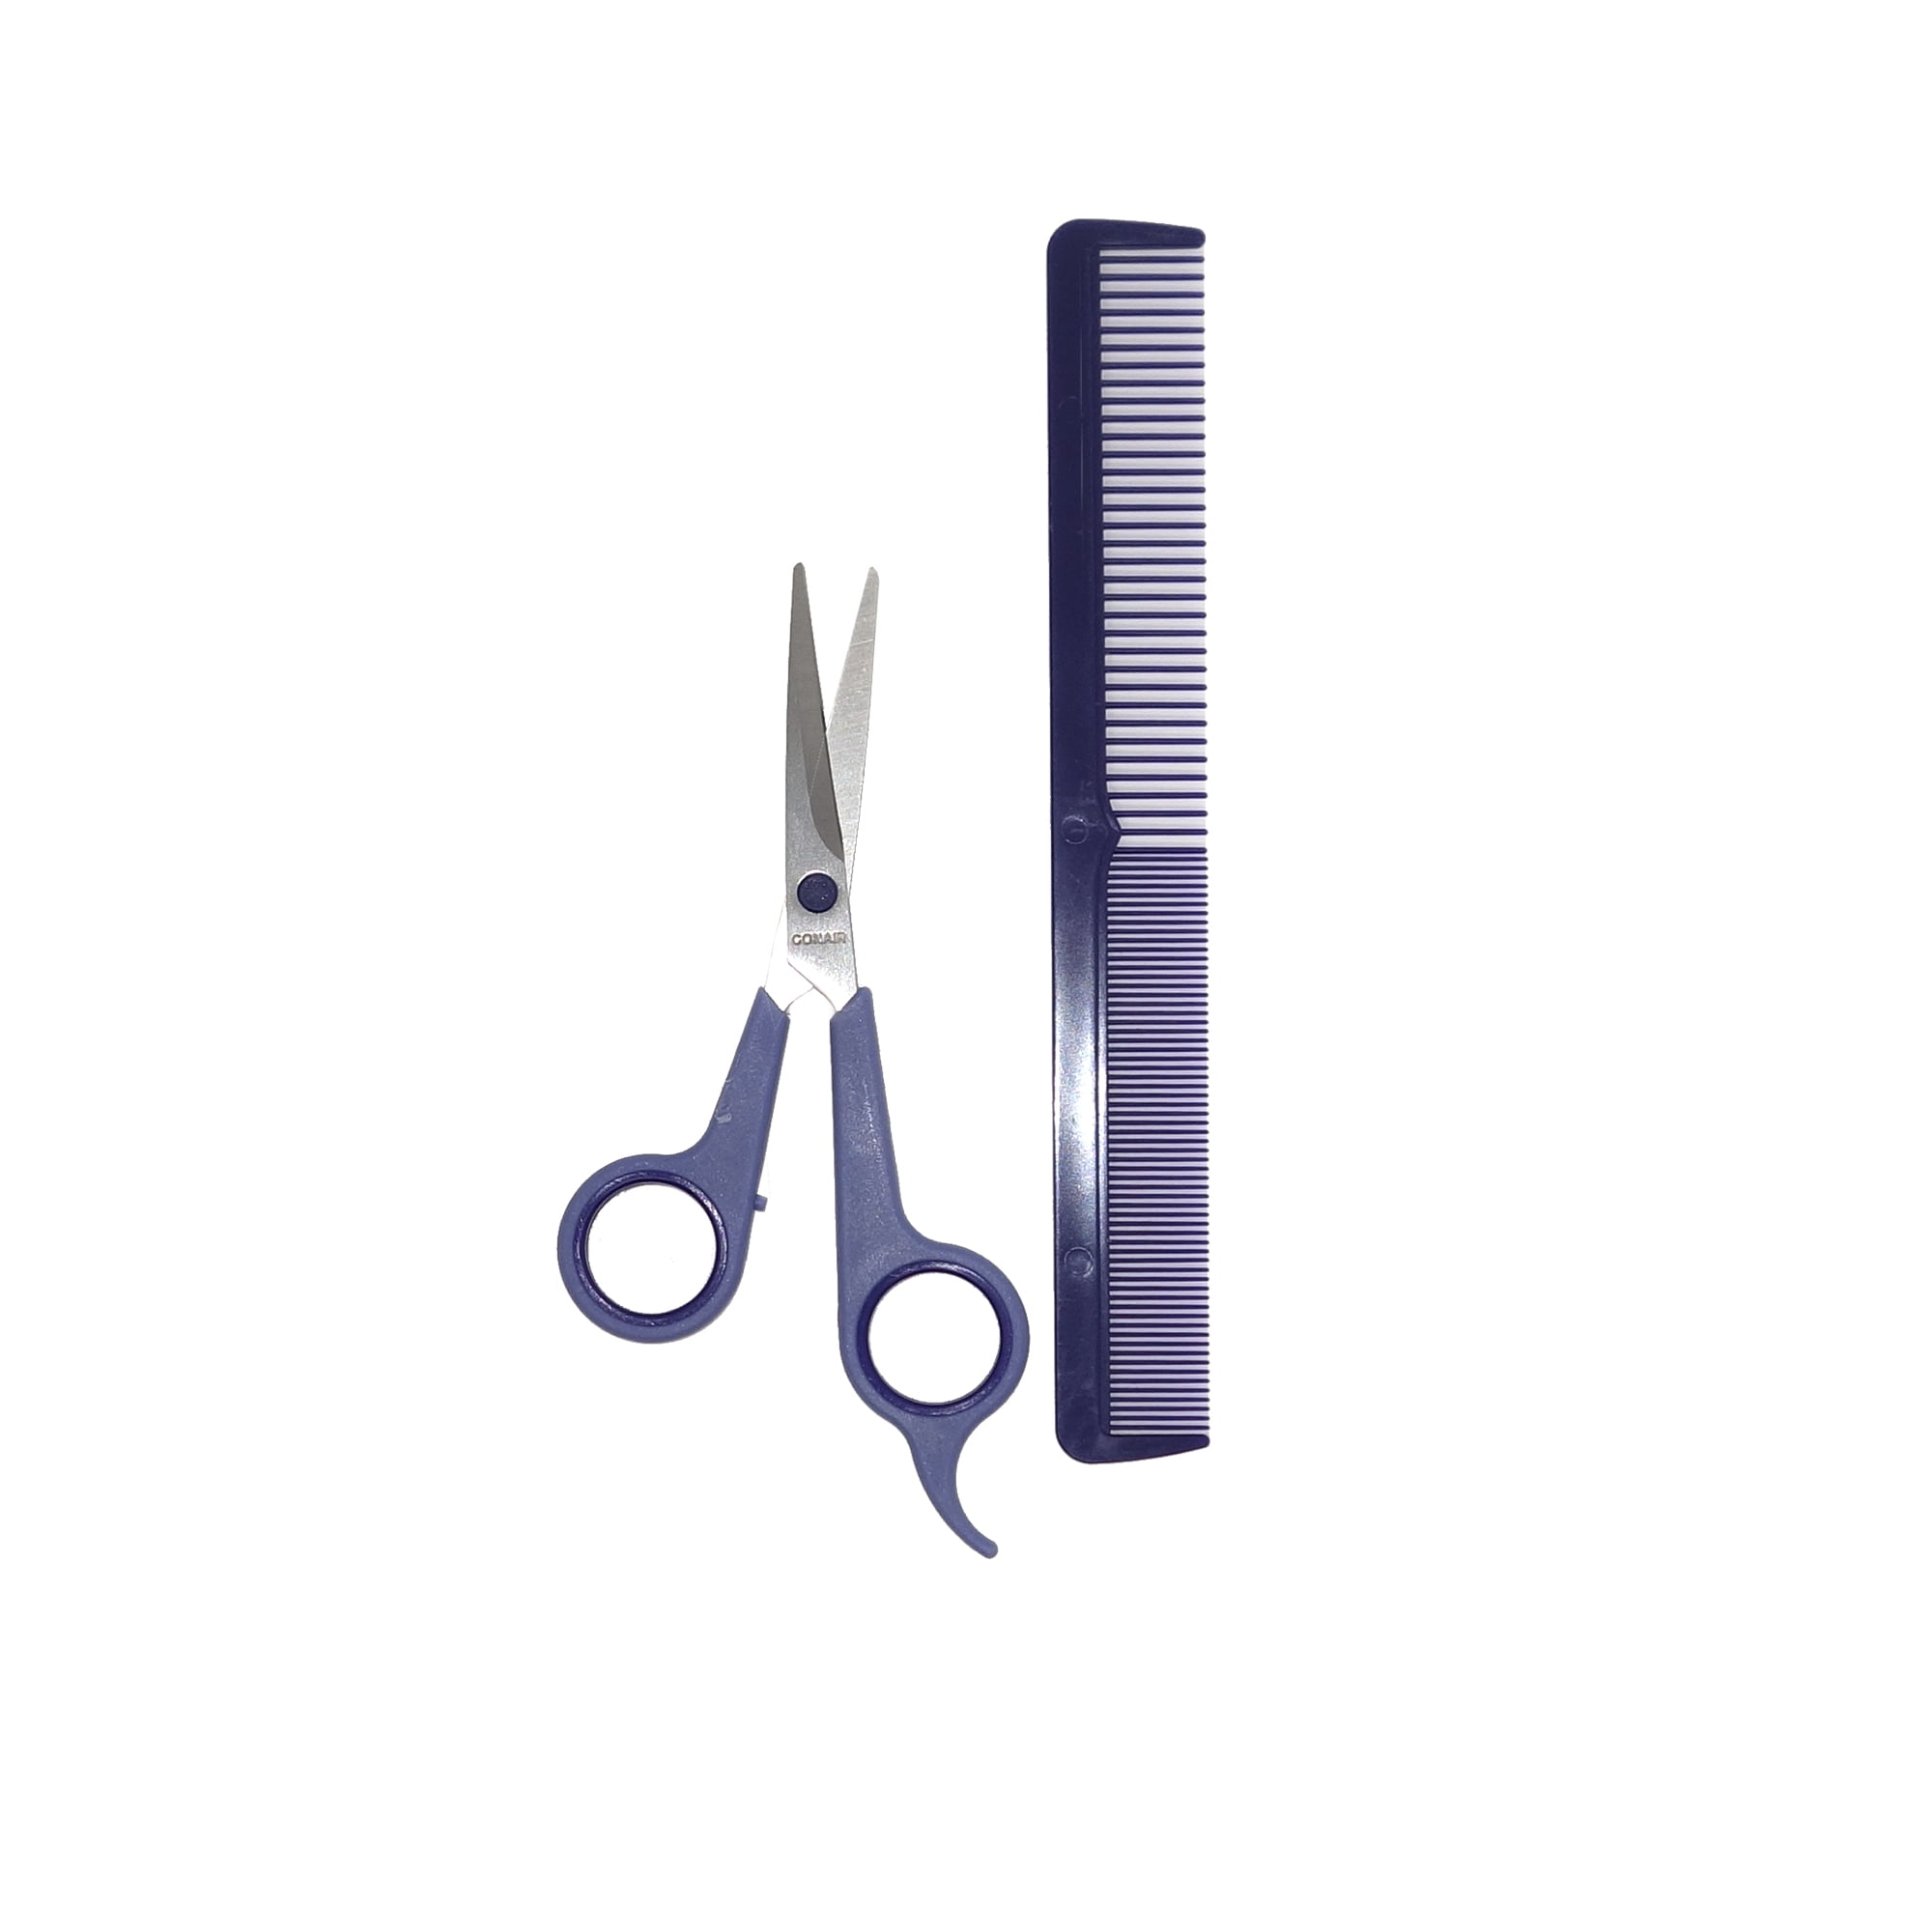 conair comb and cut